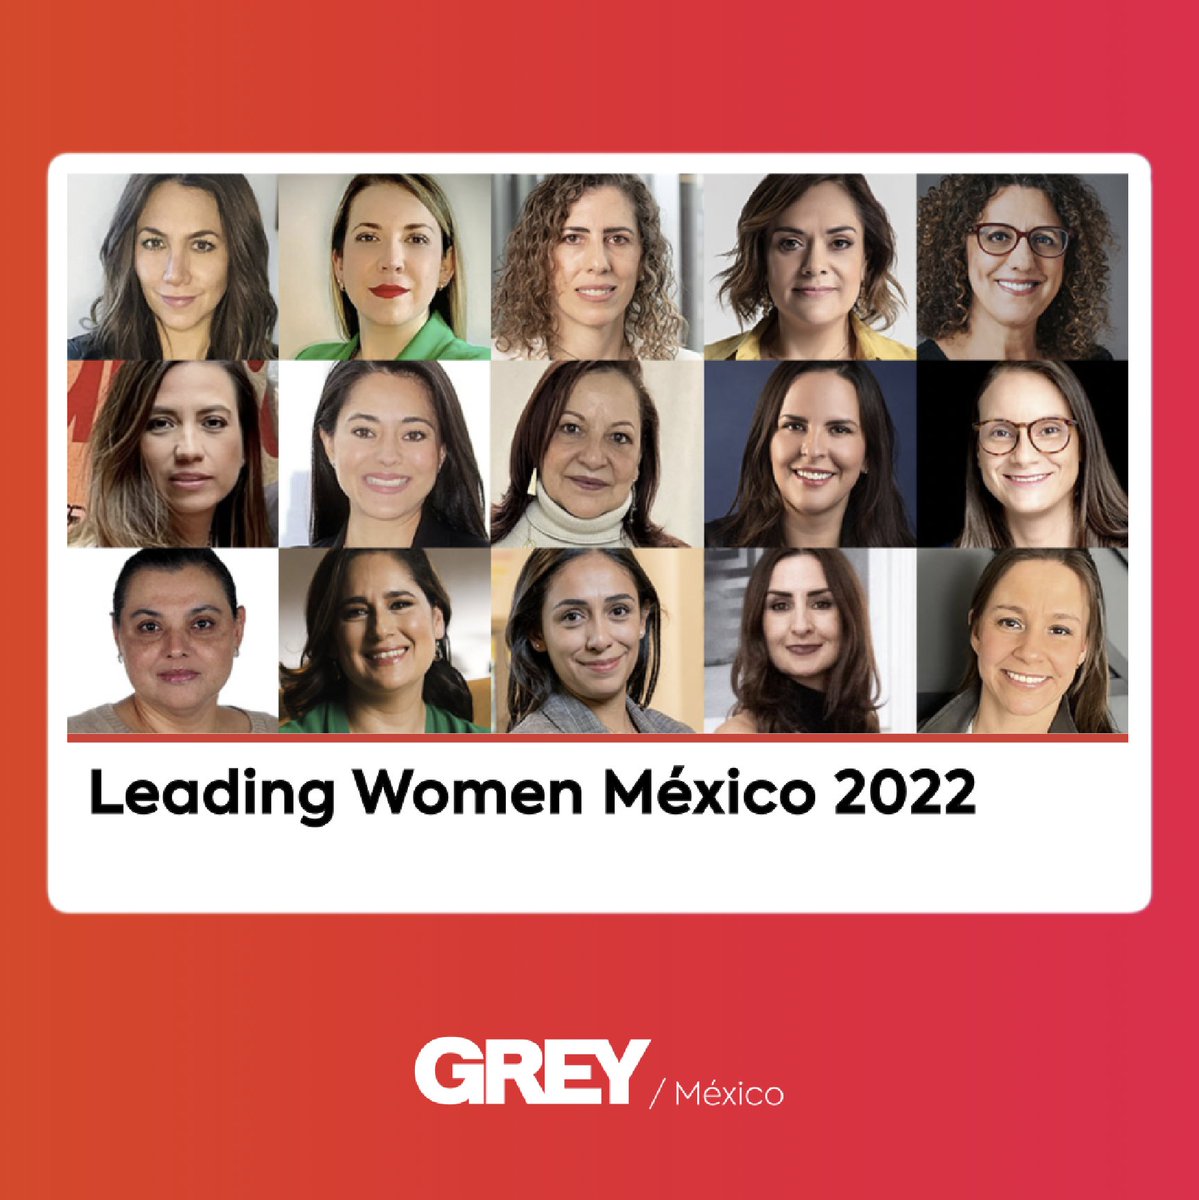 Esta semana nuestra CCO @coralarnedo fue reconocida como una de las 15 Leading Women México 2022 y no podríamos estar más felices por eso. Gracias Cori por llevarnos al Top con tu liderazgo y dedicación. 👏